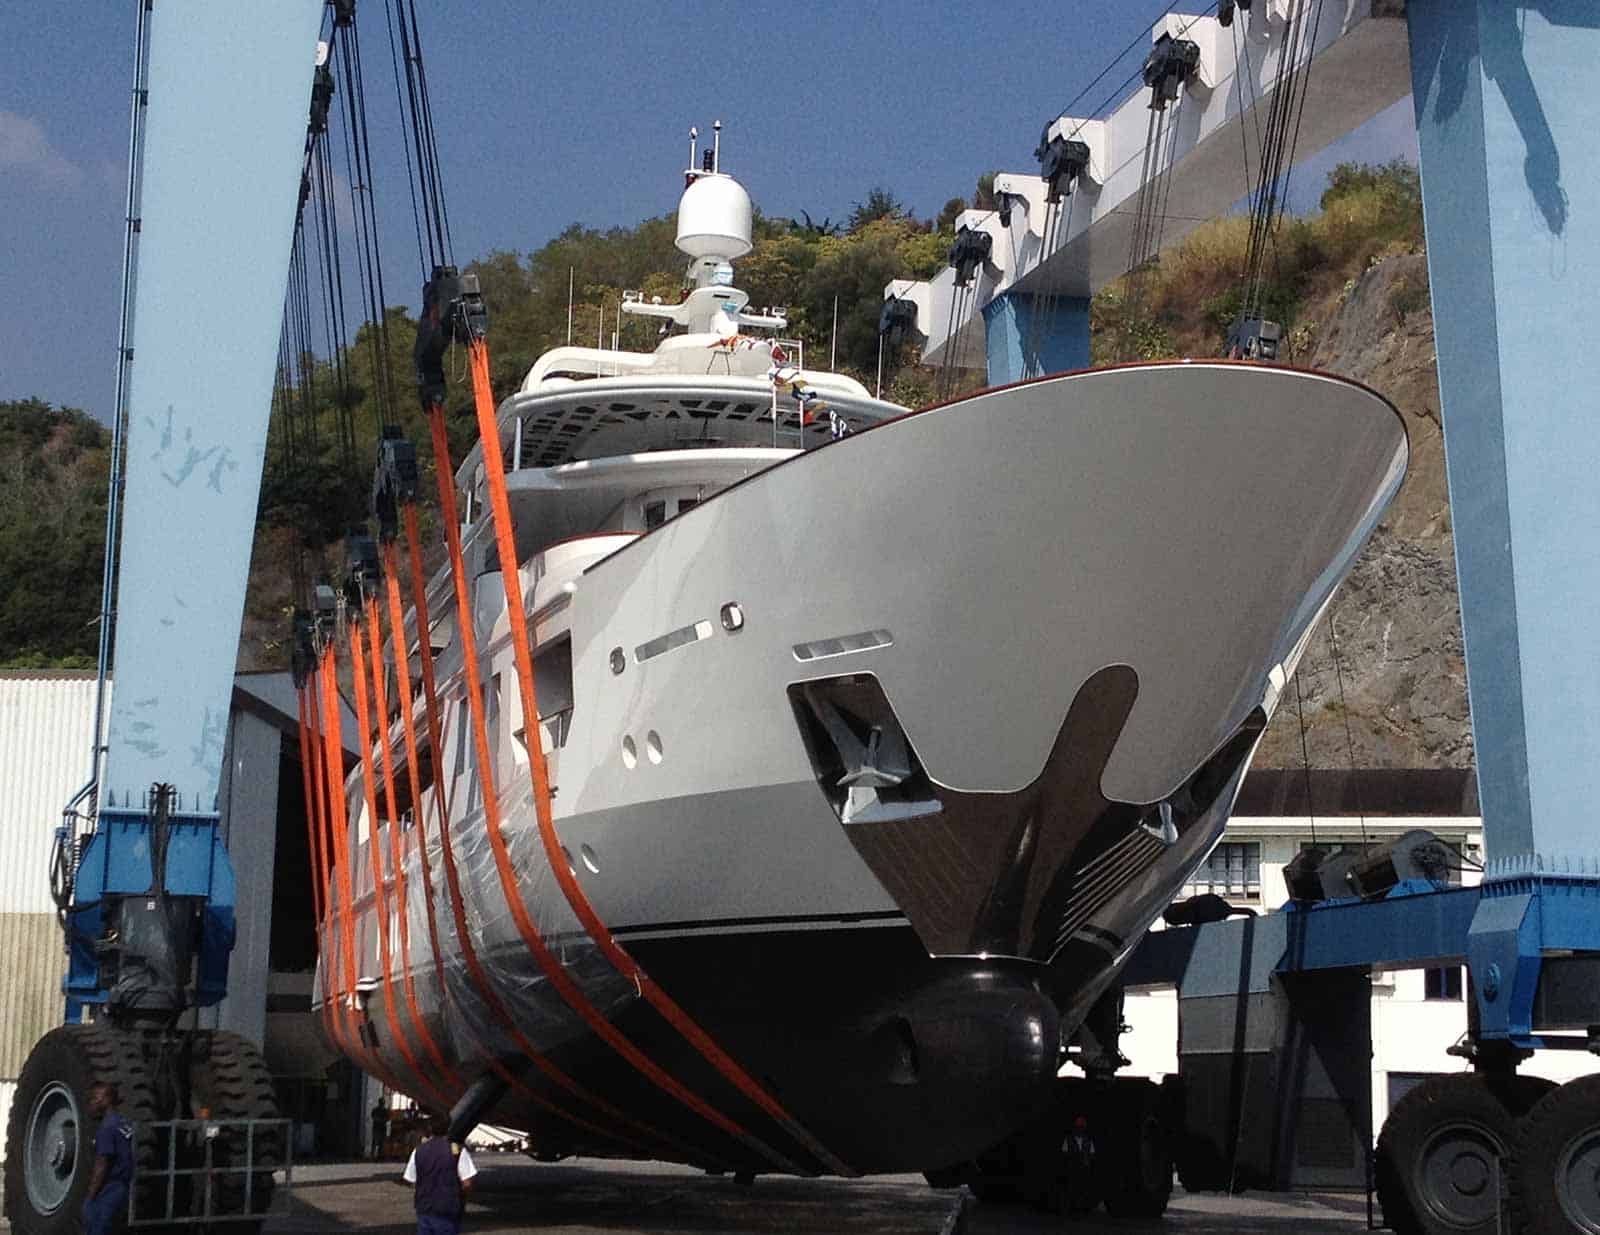 Viudes-Motor-Yacht-at-Marina